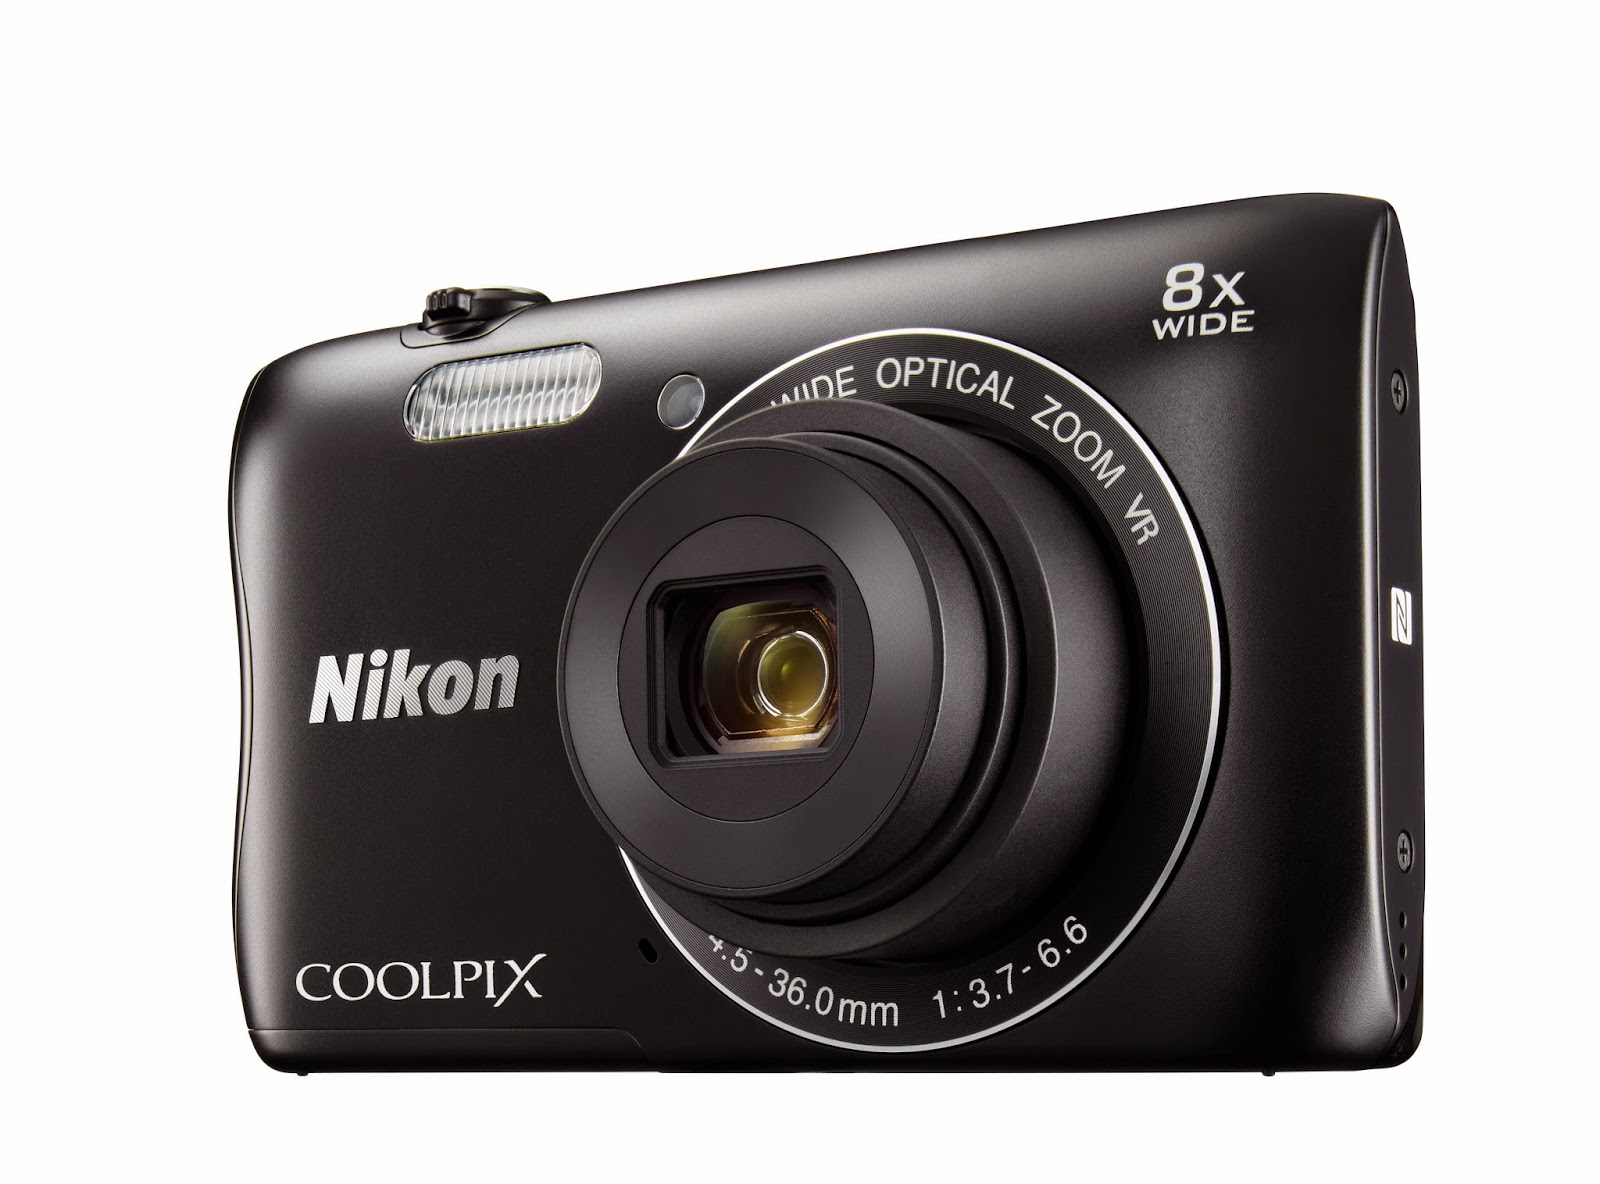  , Spesifikasi dan Harga Kamera Nikon Coolpix S3700  Harga Kamera